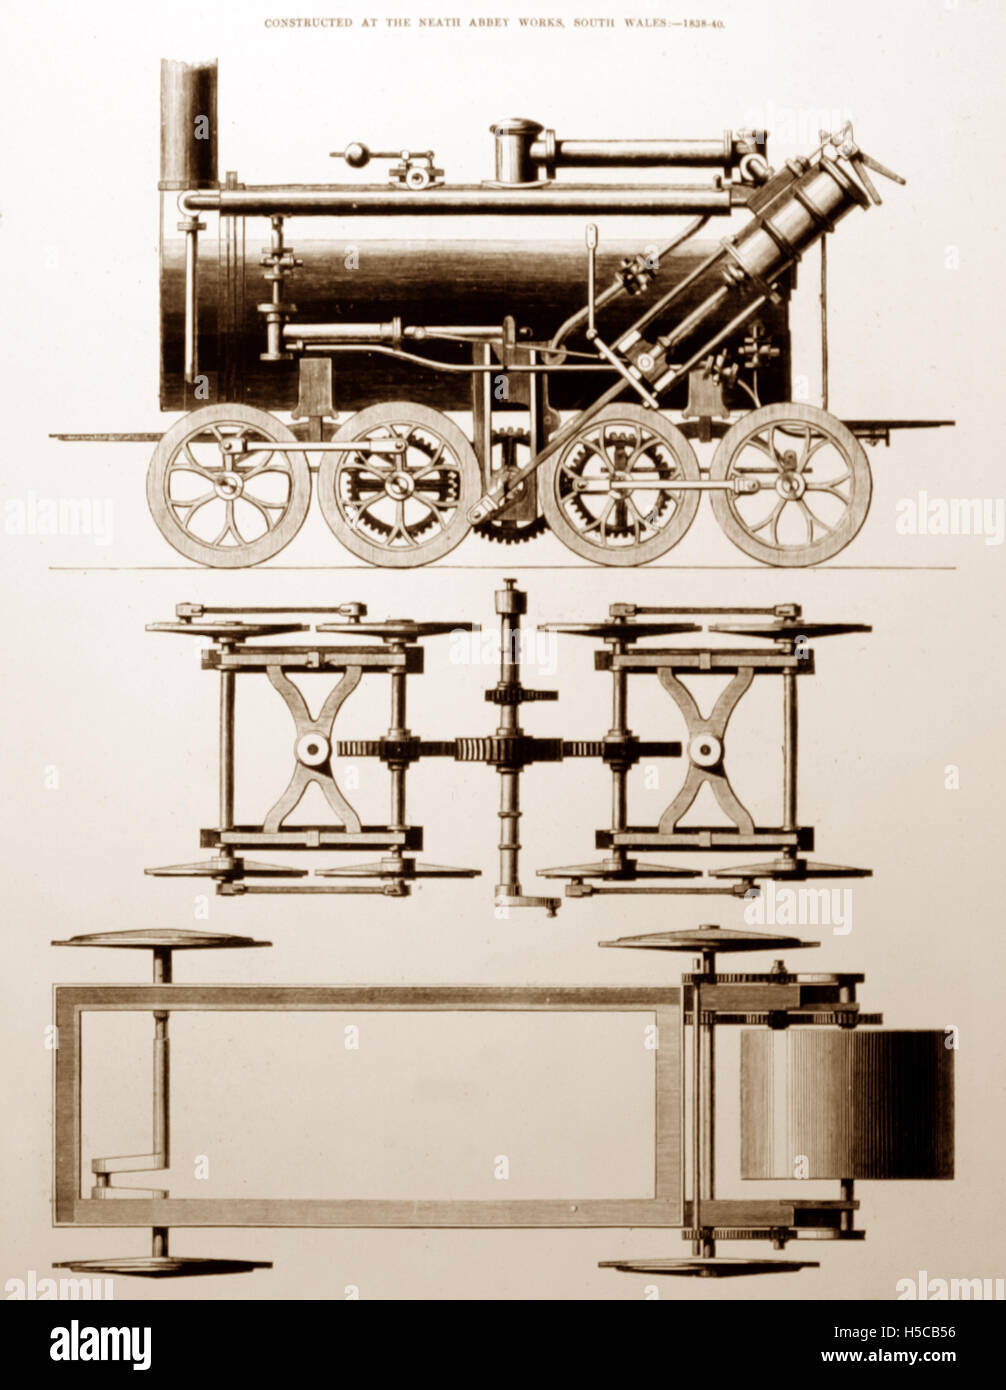 Neath Abbey grils locomotive de chemin de fer - circa 1840 Banque D'Images